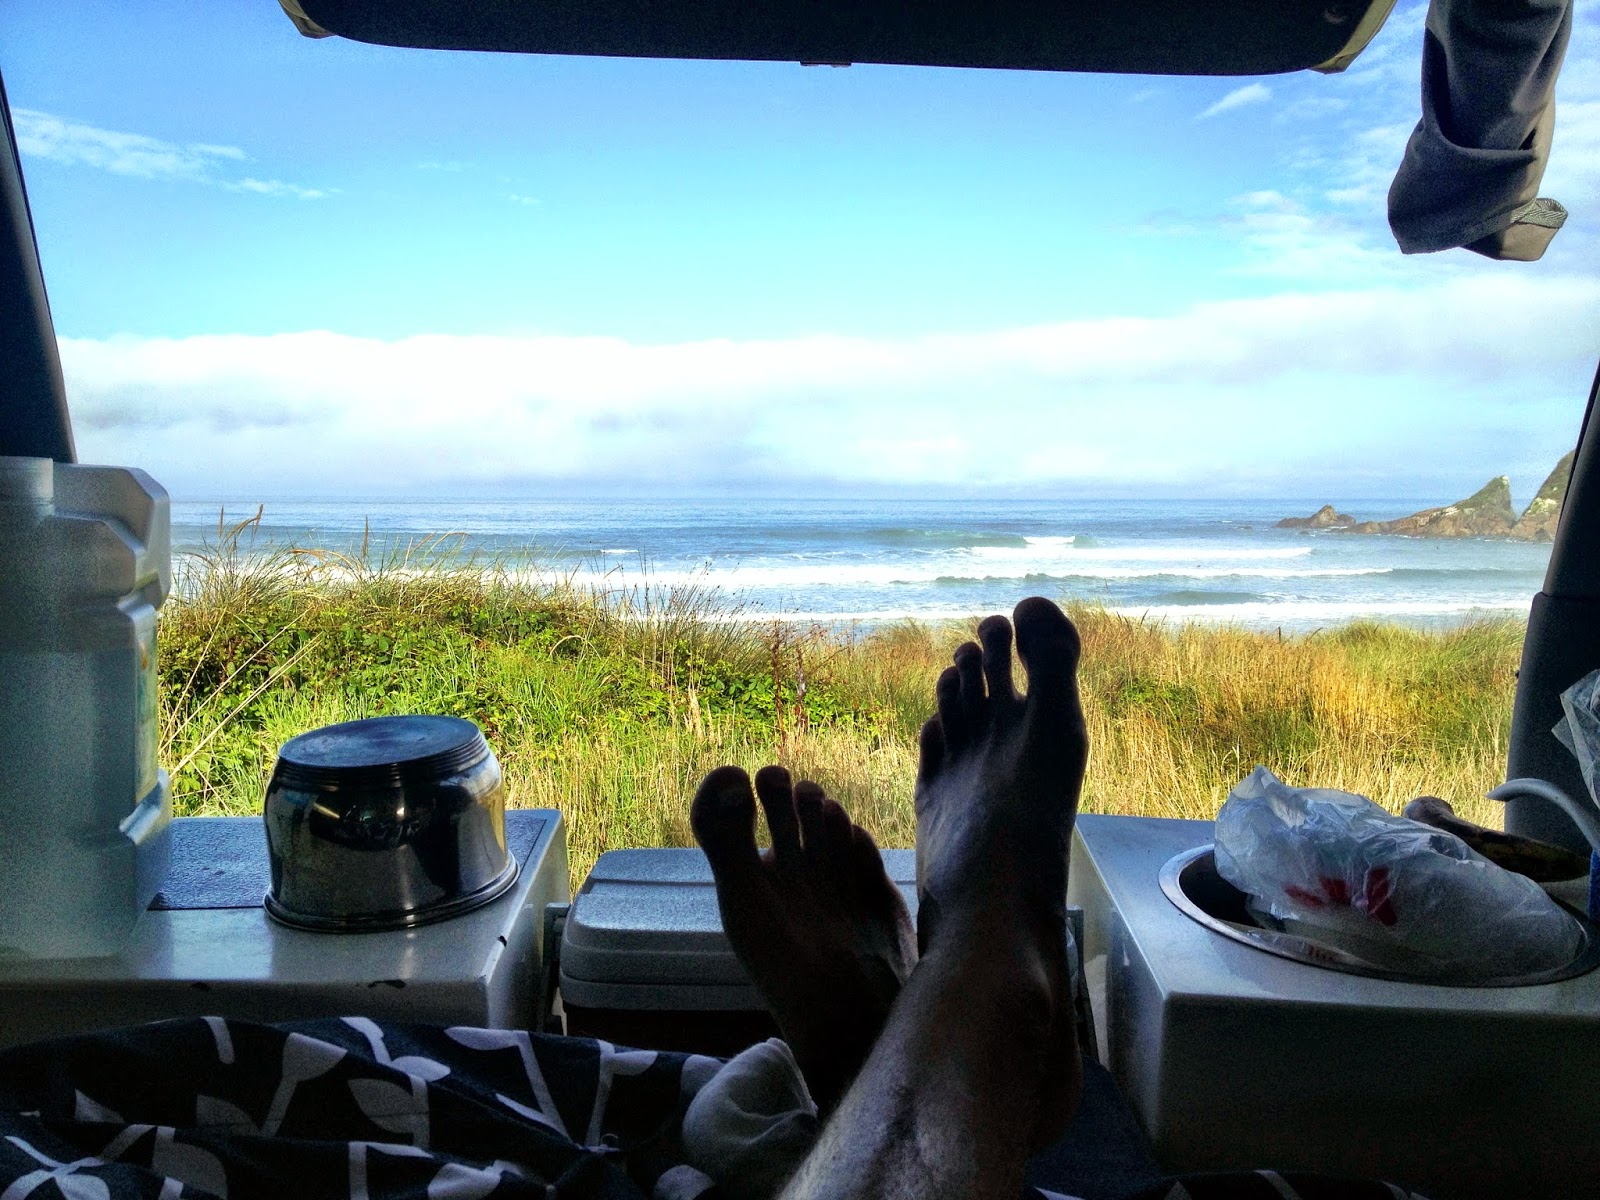 Campervan view overlooking Westport surf - New Zealand